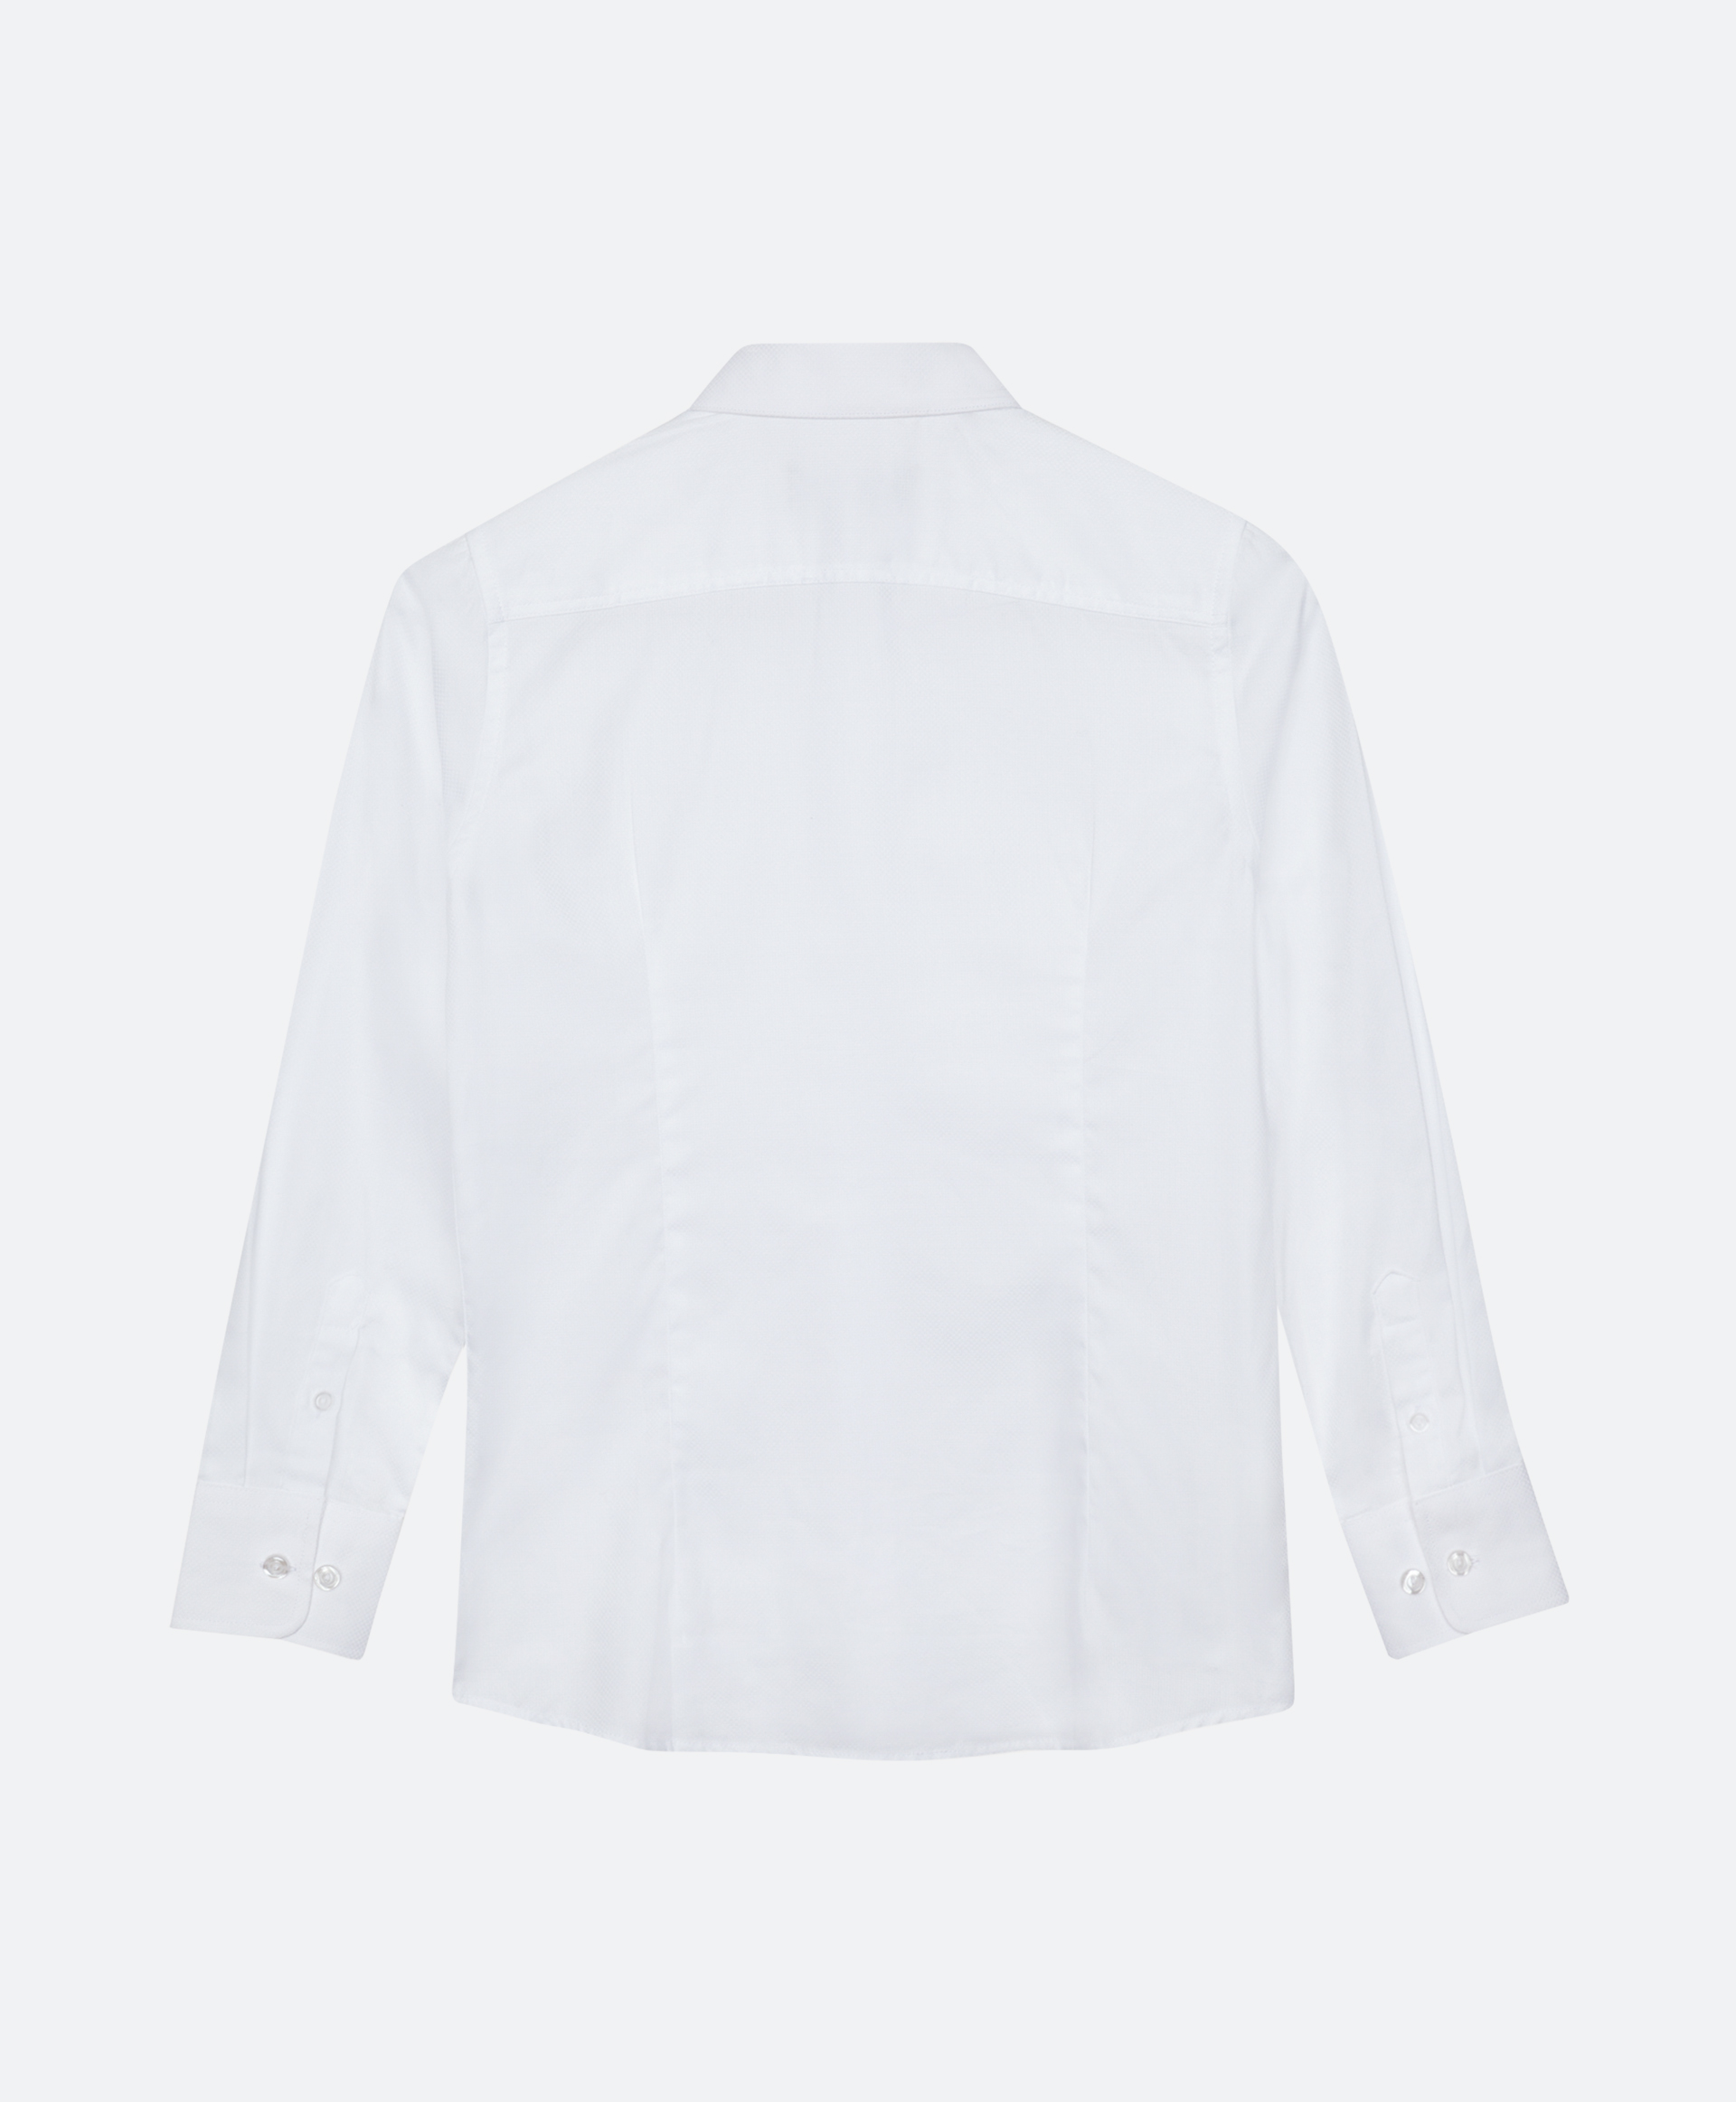 Сорочка белая с длинным рукавом Gulliver 200GSBC2302, размер 128, цвет белый - фото 5